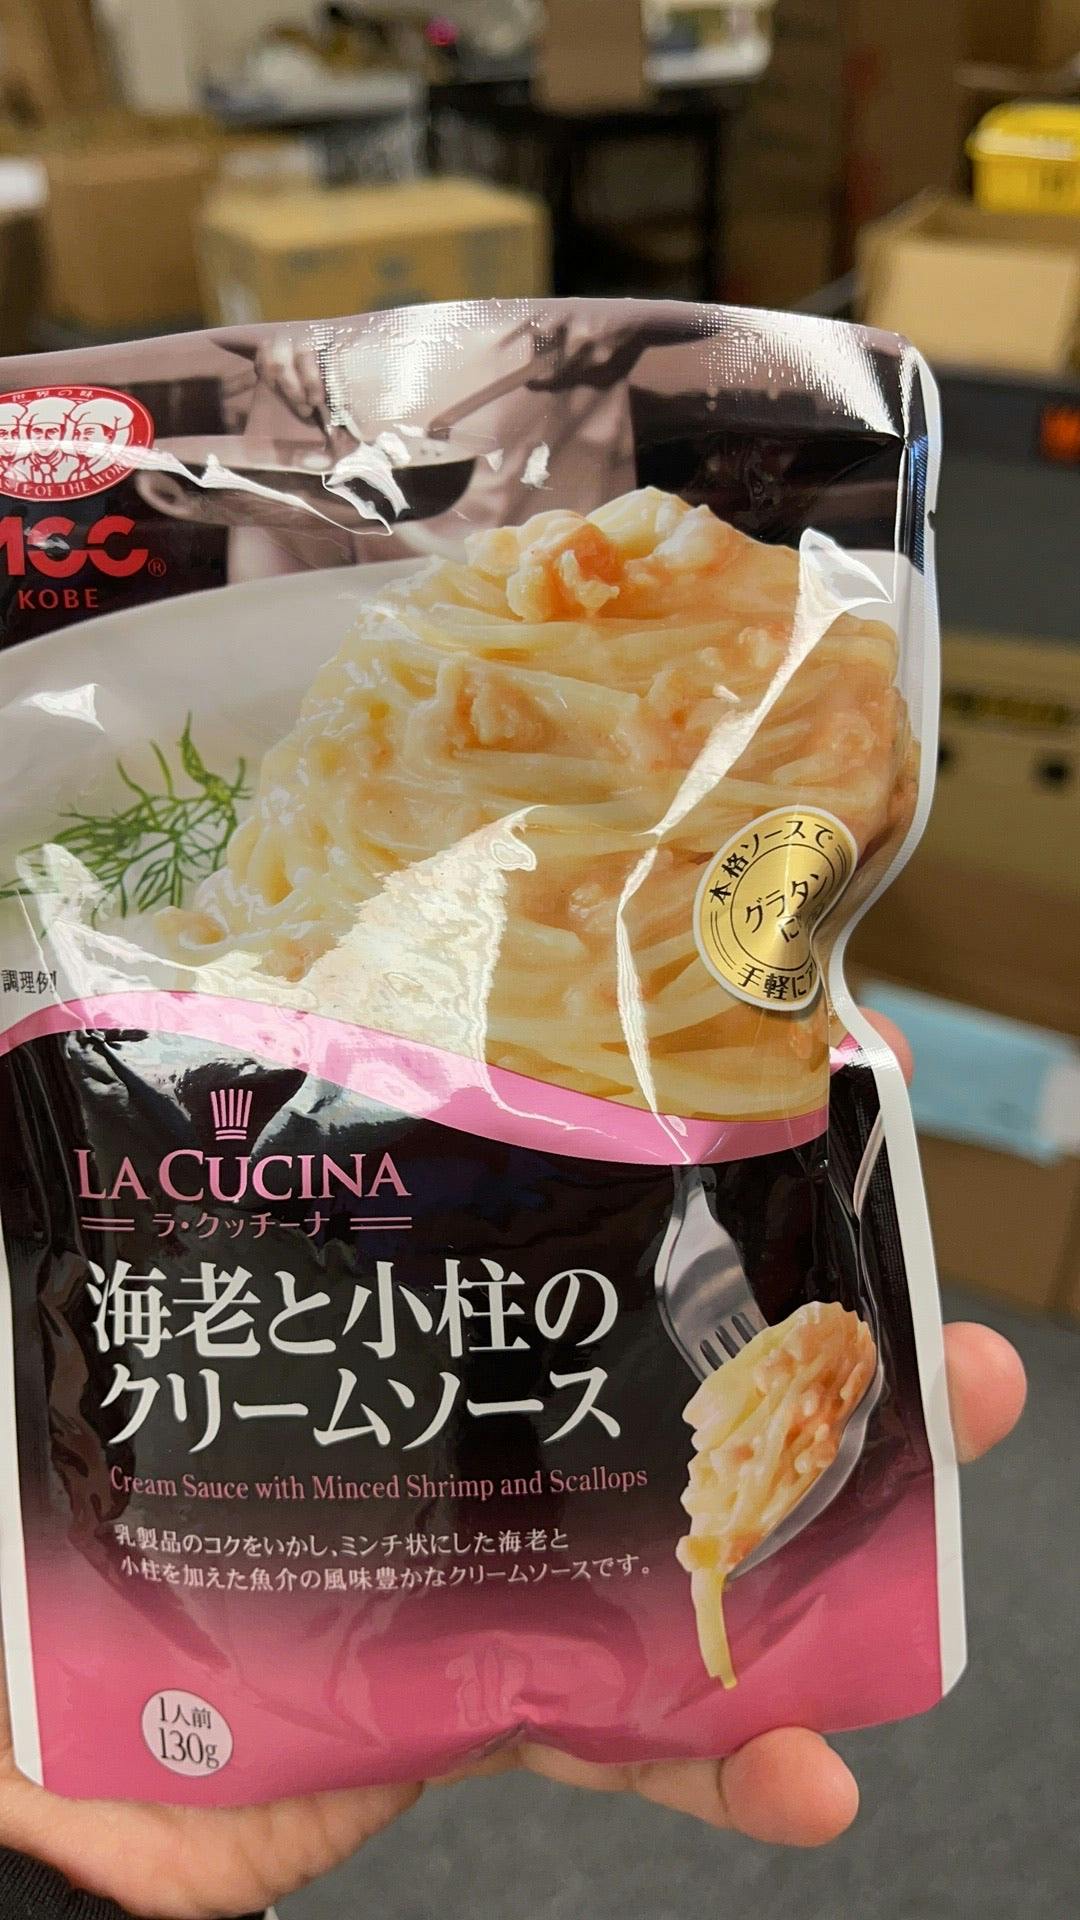 日本进口 MCC出品 虾扇贝奶油意面酱 4.5 oz Mcc的招牌调料